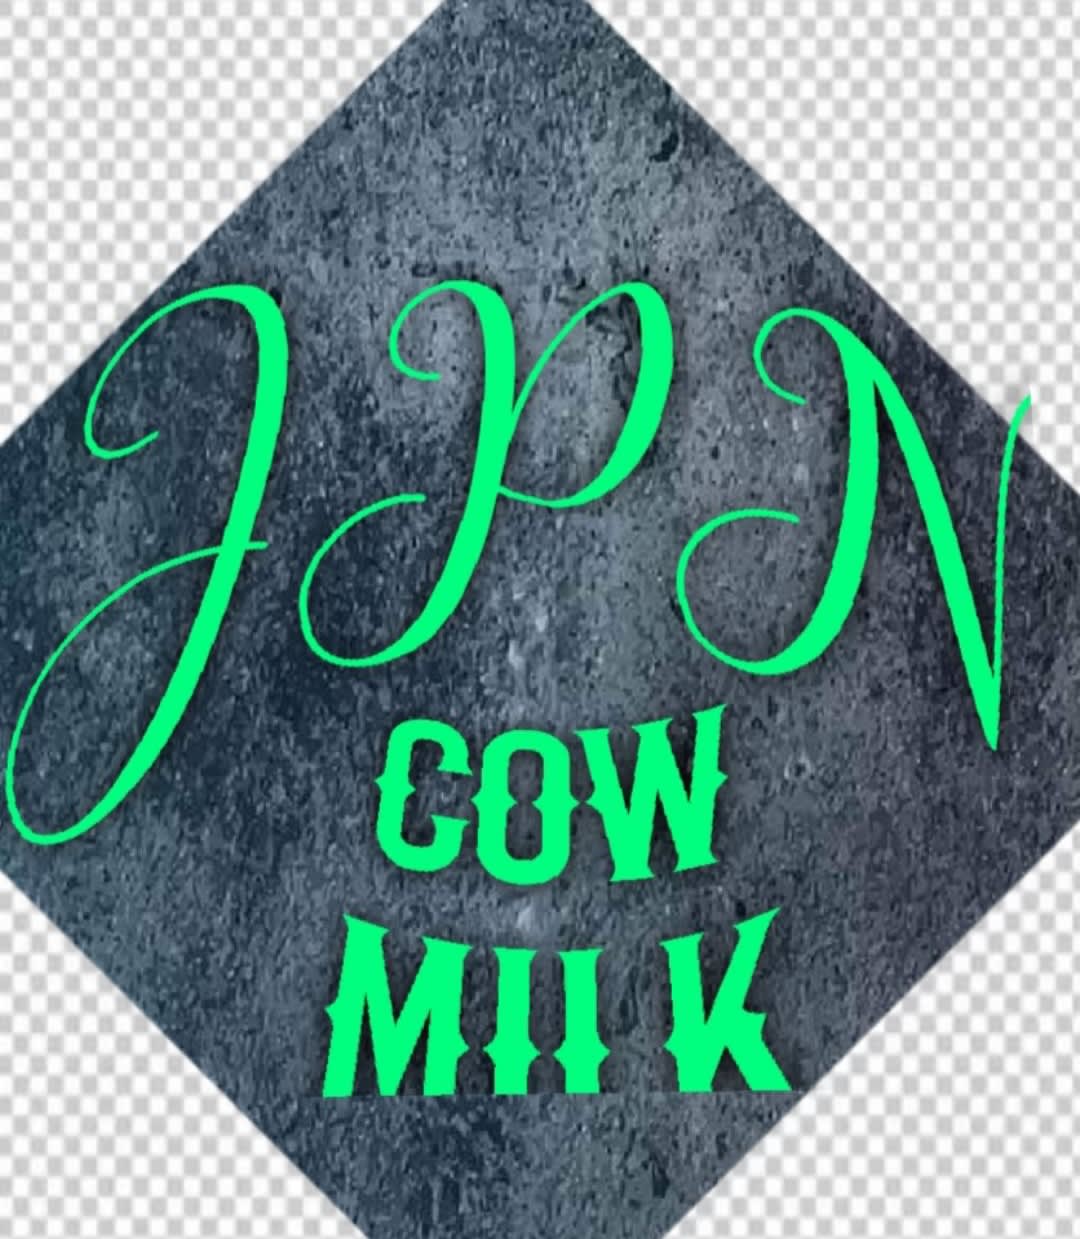 J.P.N Cow Milk